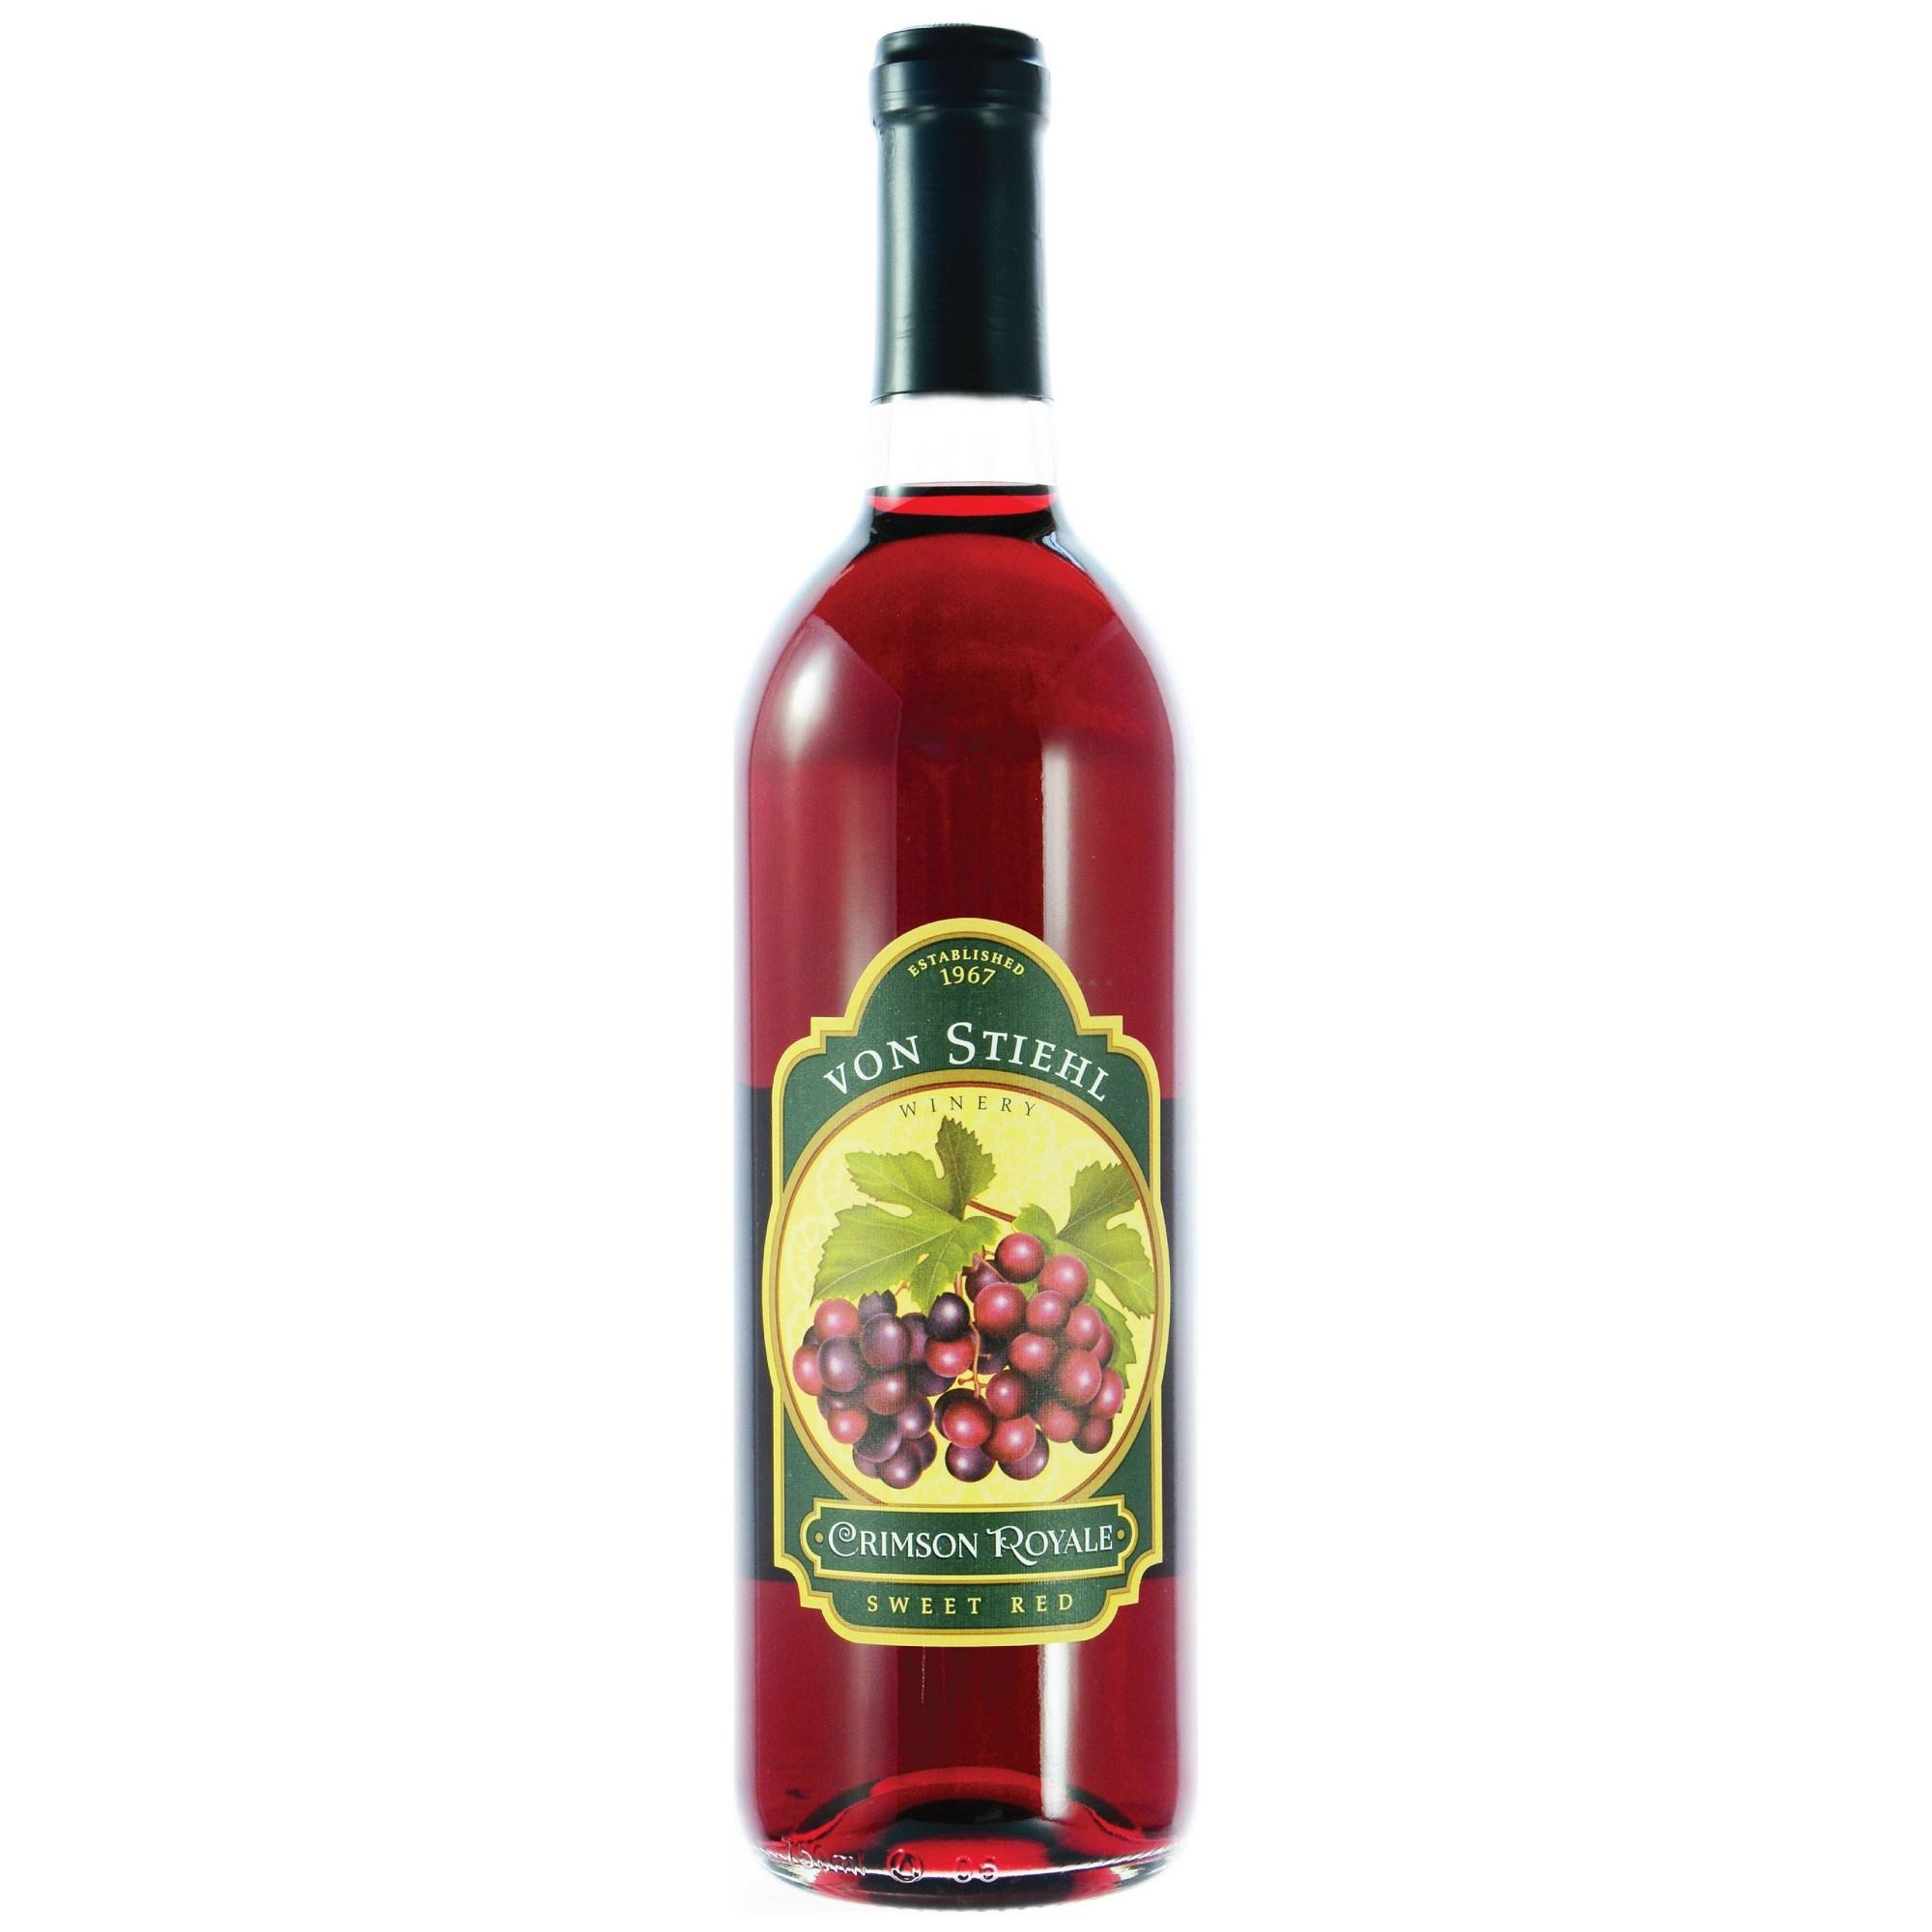 Von Stiehl Crimson Royale Sweet Red Wine - 750 ml